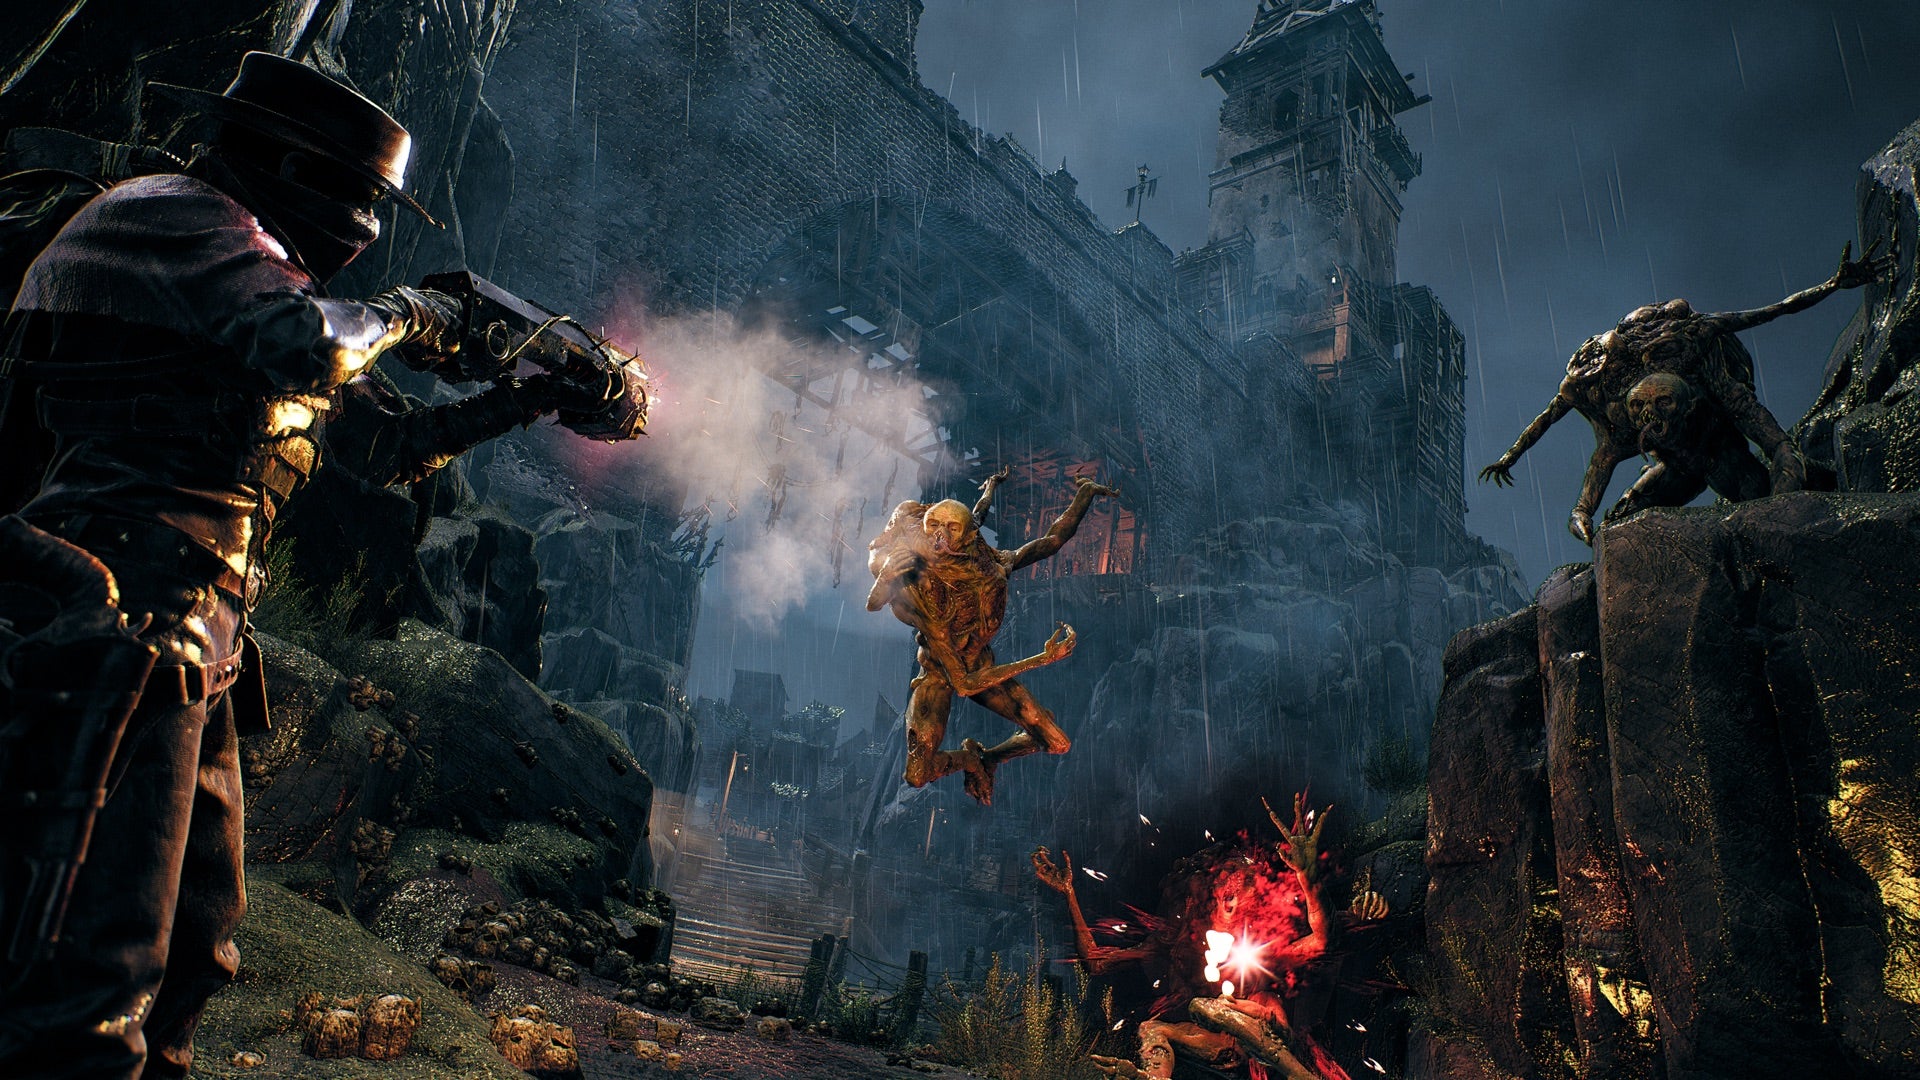 Uno screenshot del DLC The Awakened King di Remnant 2 che mostra un giocatore che attacca nemici apparentemente anfibi mentre un imponente castello incombe sopra di loro.